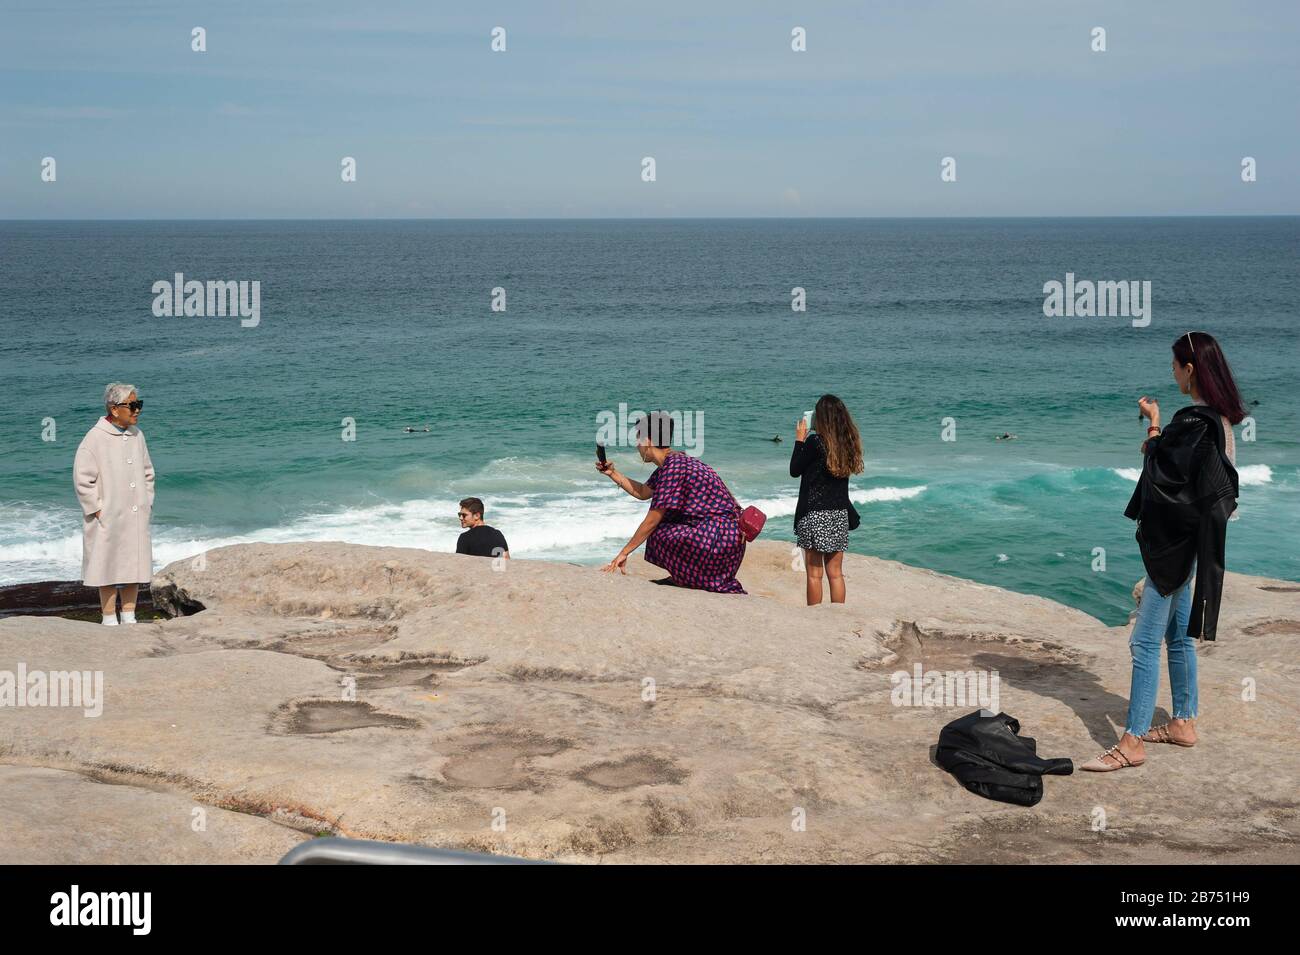 27.09.2019, Sydney, Nueva Gales del Sur, Australia - los turistas toman fotos en los acantilados de Tamarama Point con una vista del mar. El mirador está situado en la ruta costera Bondi a Coogee Walk. [traducción automática] Foto de stock